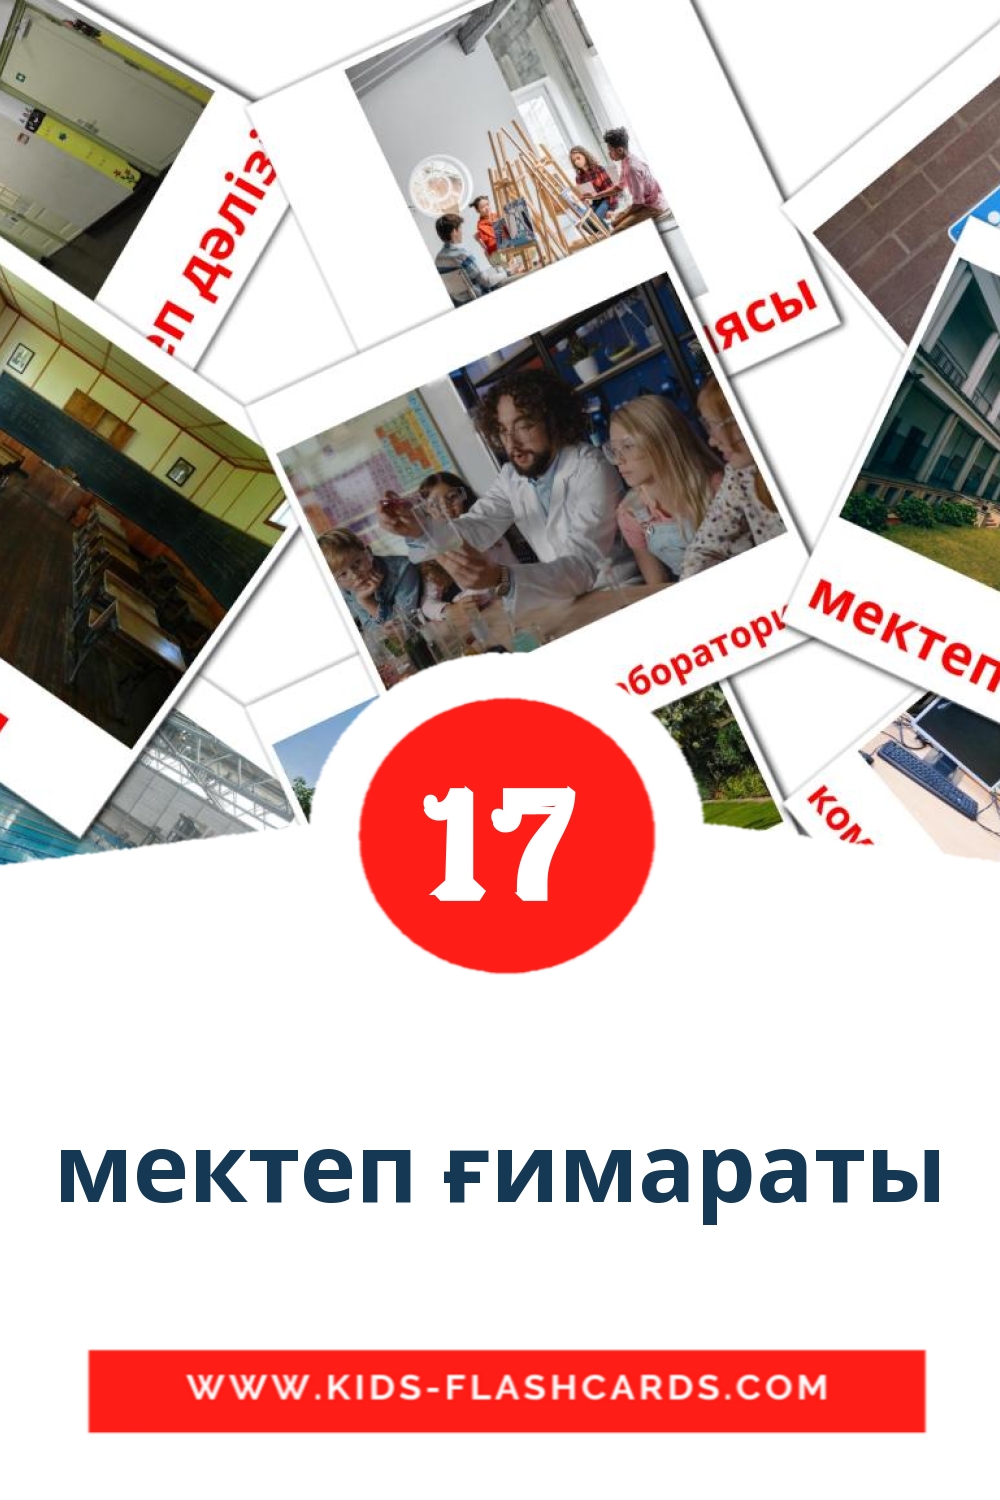 17 мектеп ғимараты Bildkarten für den Kindergarten auf kasachisch